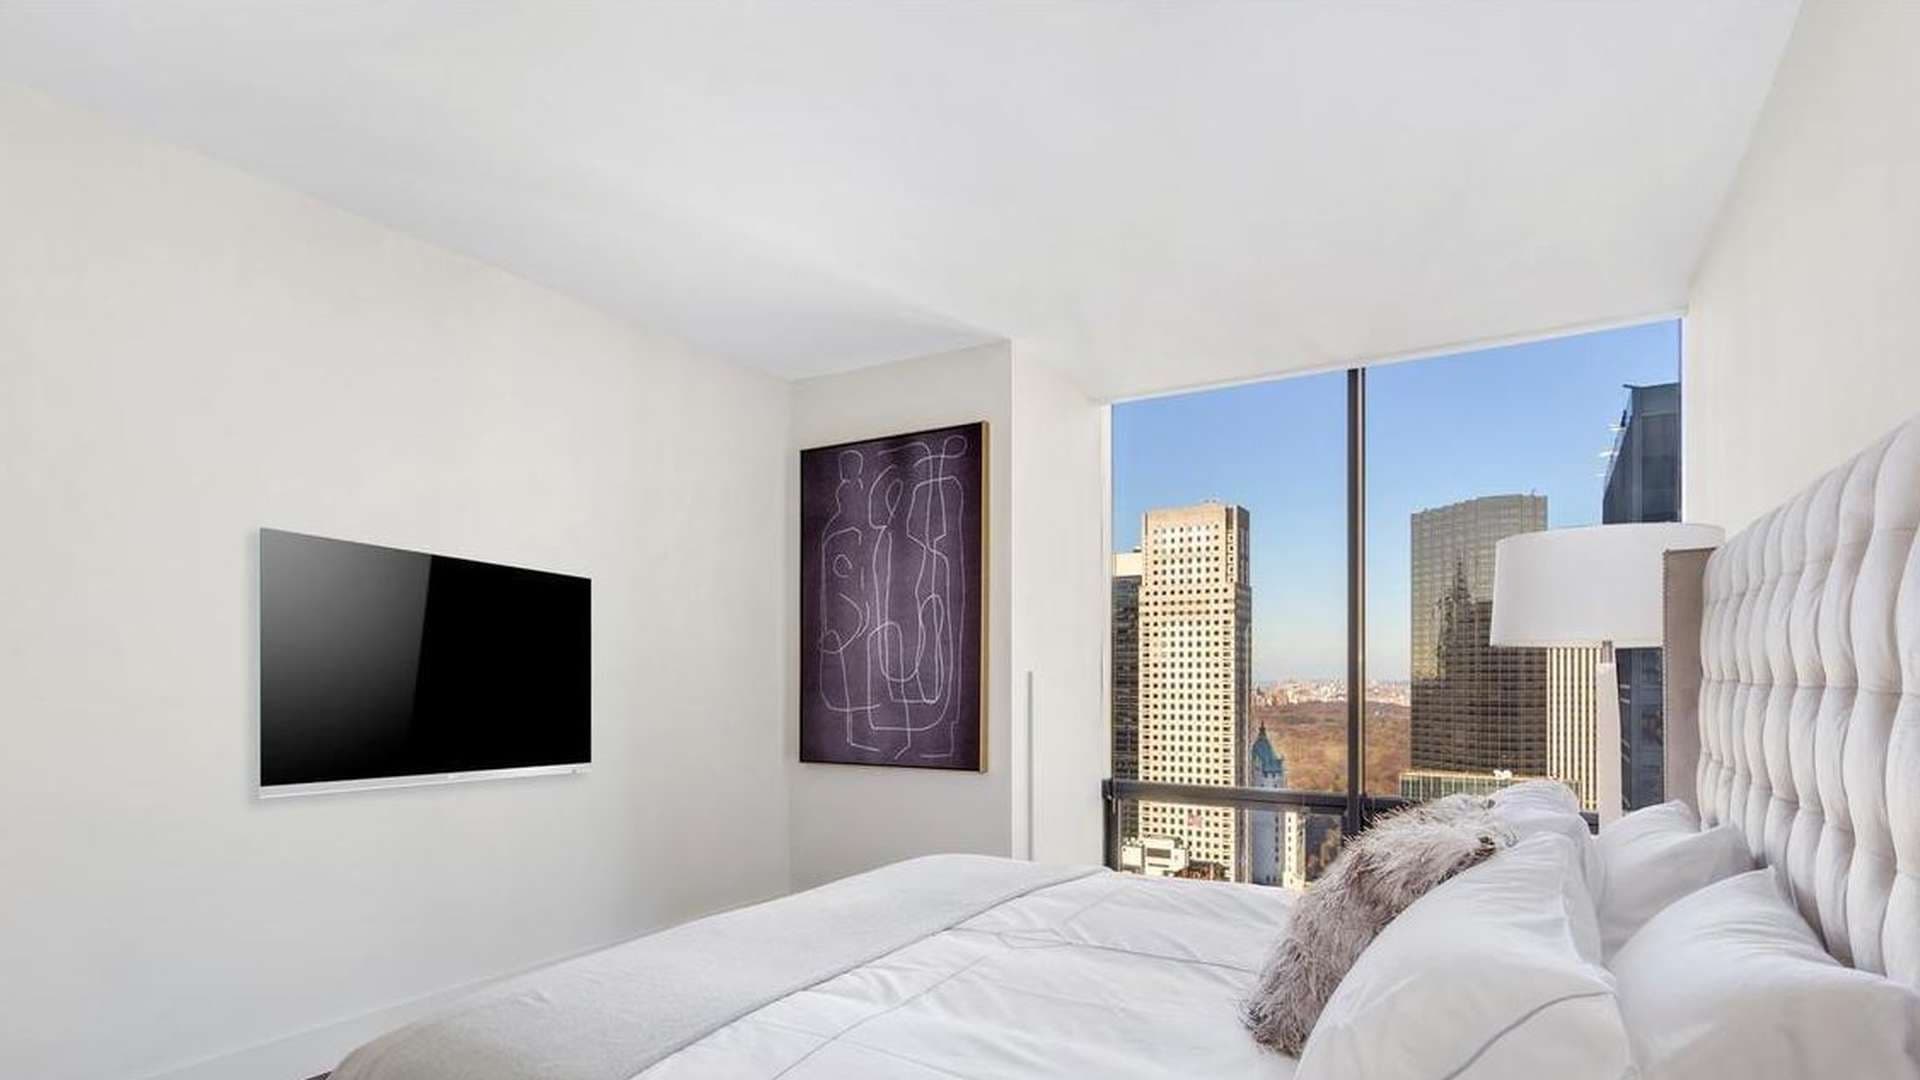 3 Bedroom Apartment For Sale 641 Fifth Avenue Lp01668 433c79d94b90d80.jpg